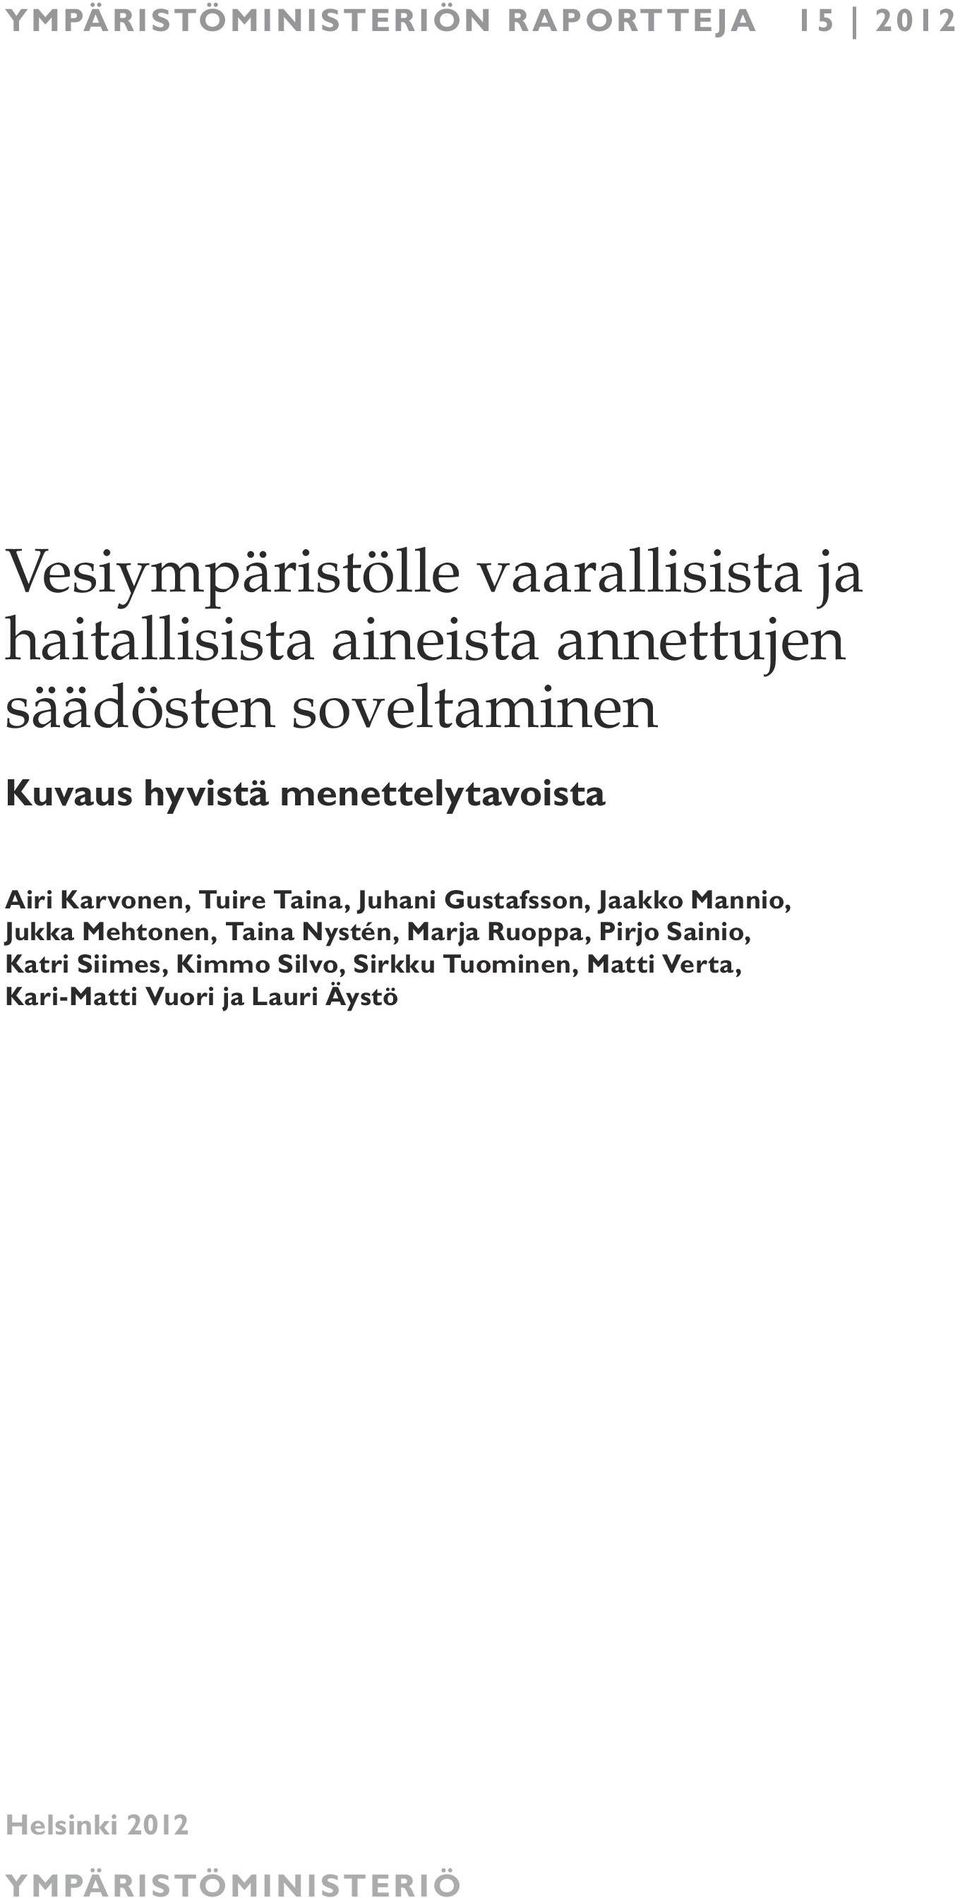 Gustafsson, Jaakko Mannio, Jukka Mehtonen, Taina Nystén, Marja Ruoppa, Pirjo Sainio, Katri Siimes,